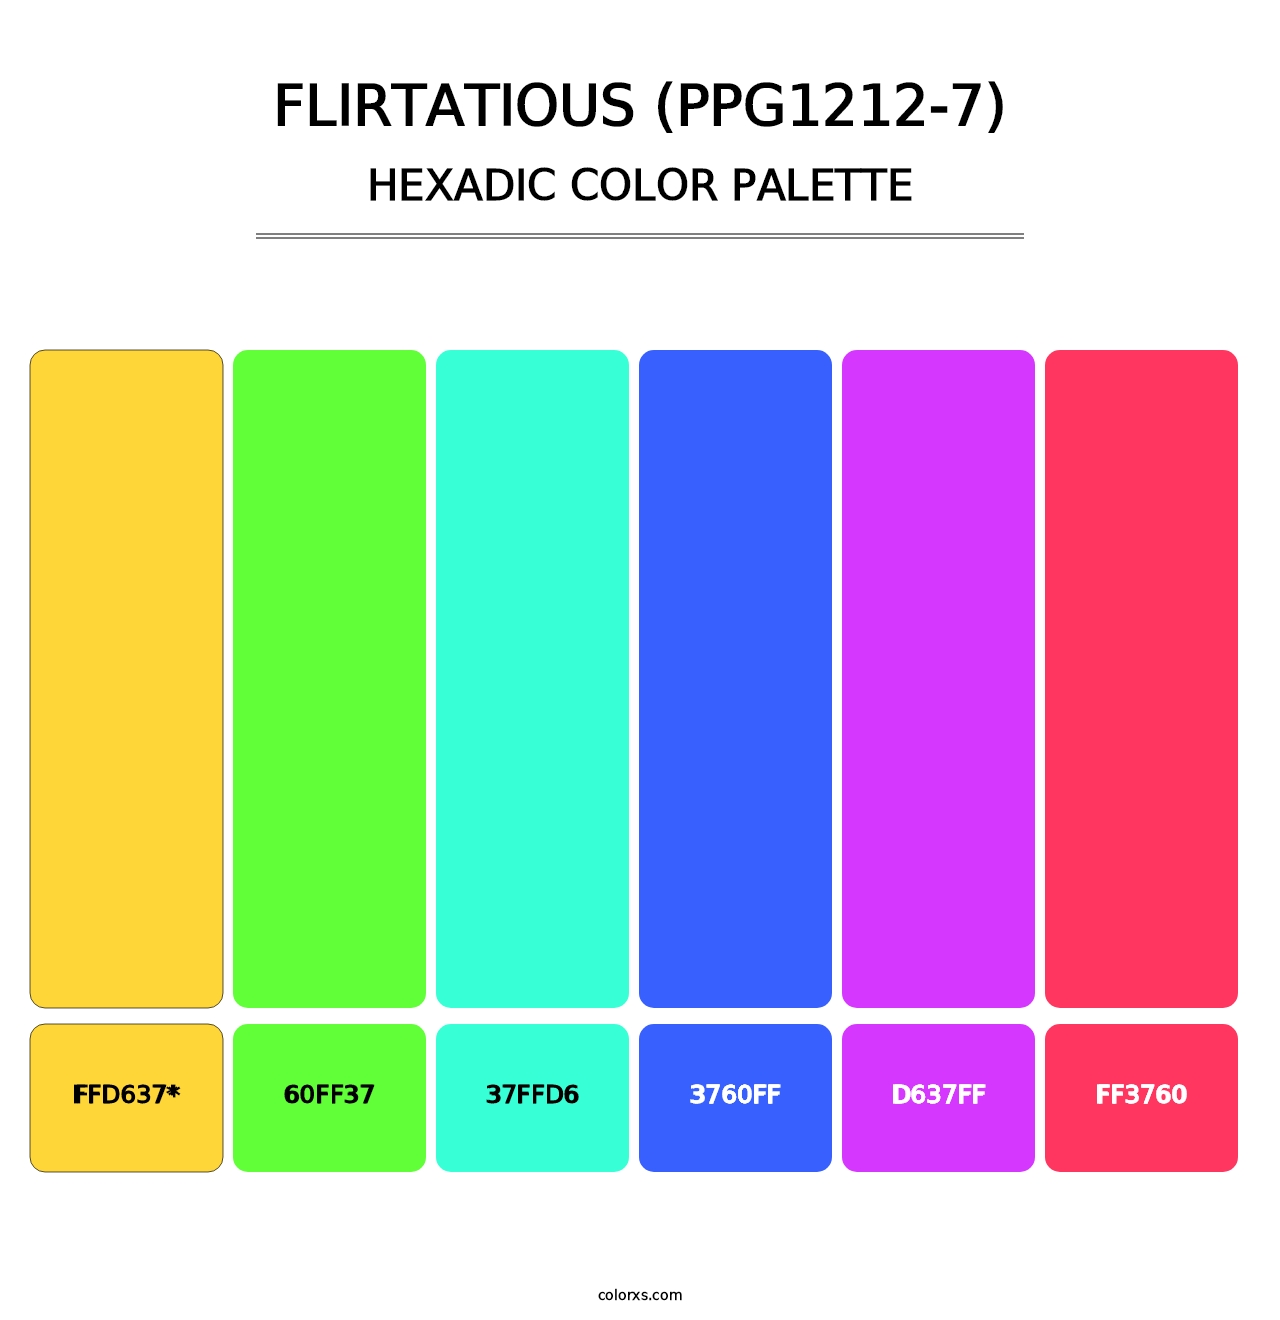 Flirtatious (PPG1212-7) - Hexadic Color Palette